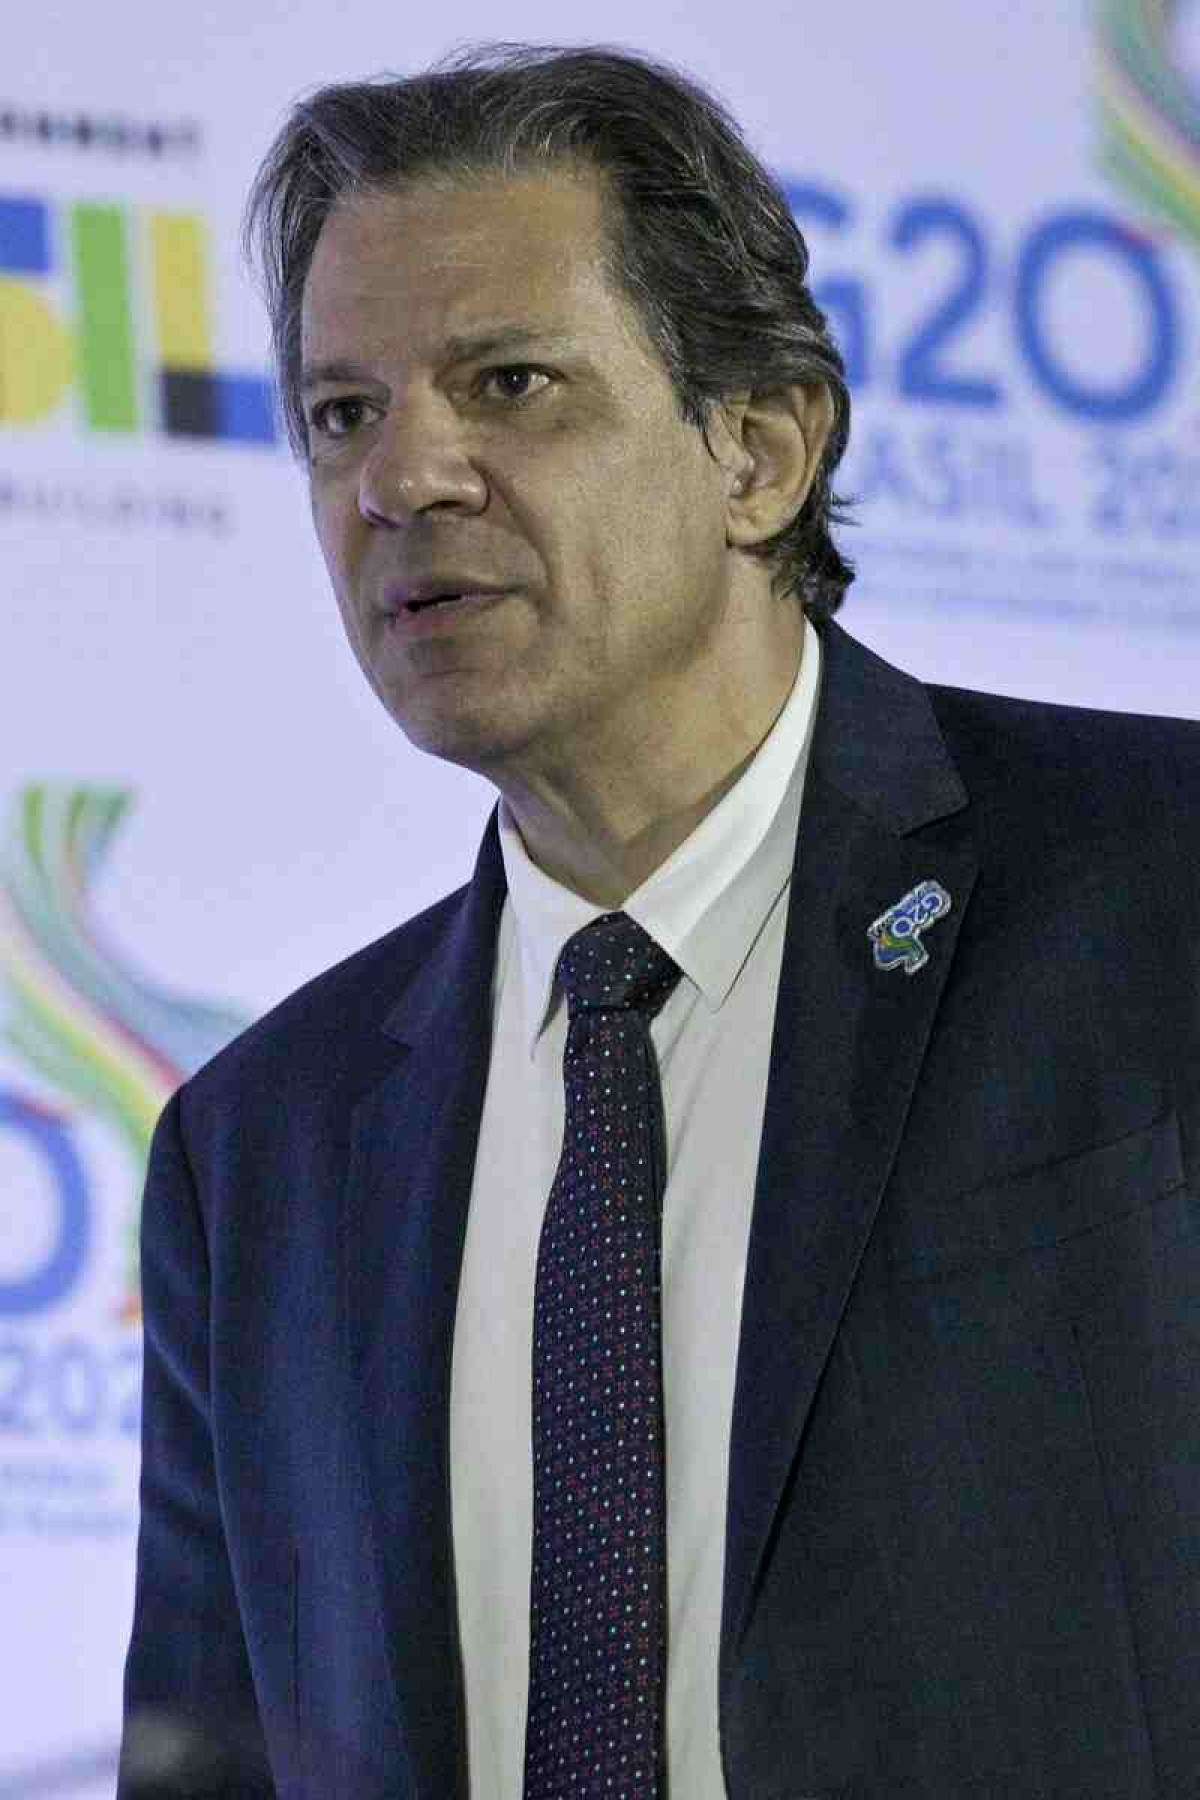 Ministros de finanças discutem clima e taxação dos super-ricos no G20 